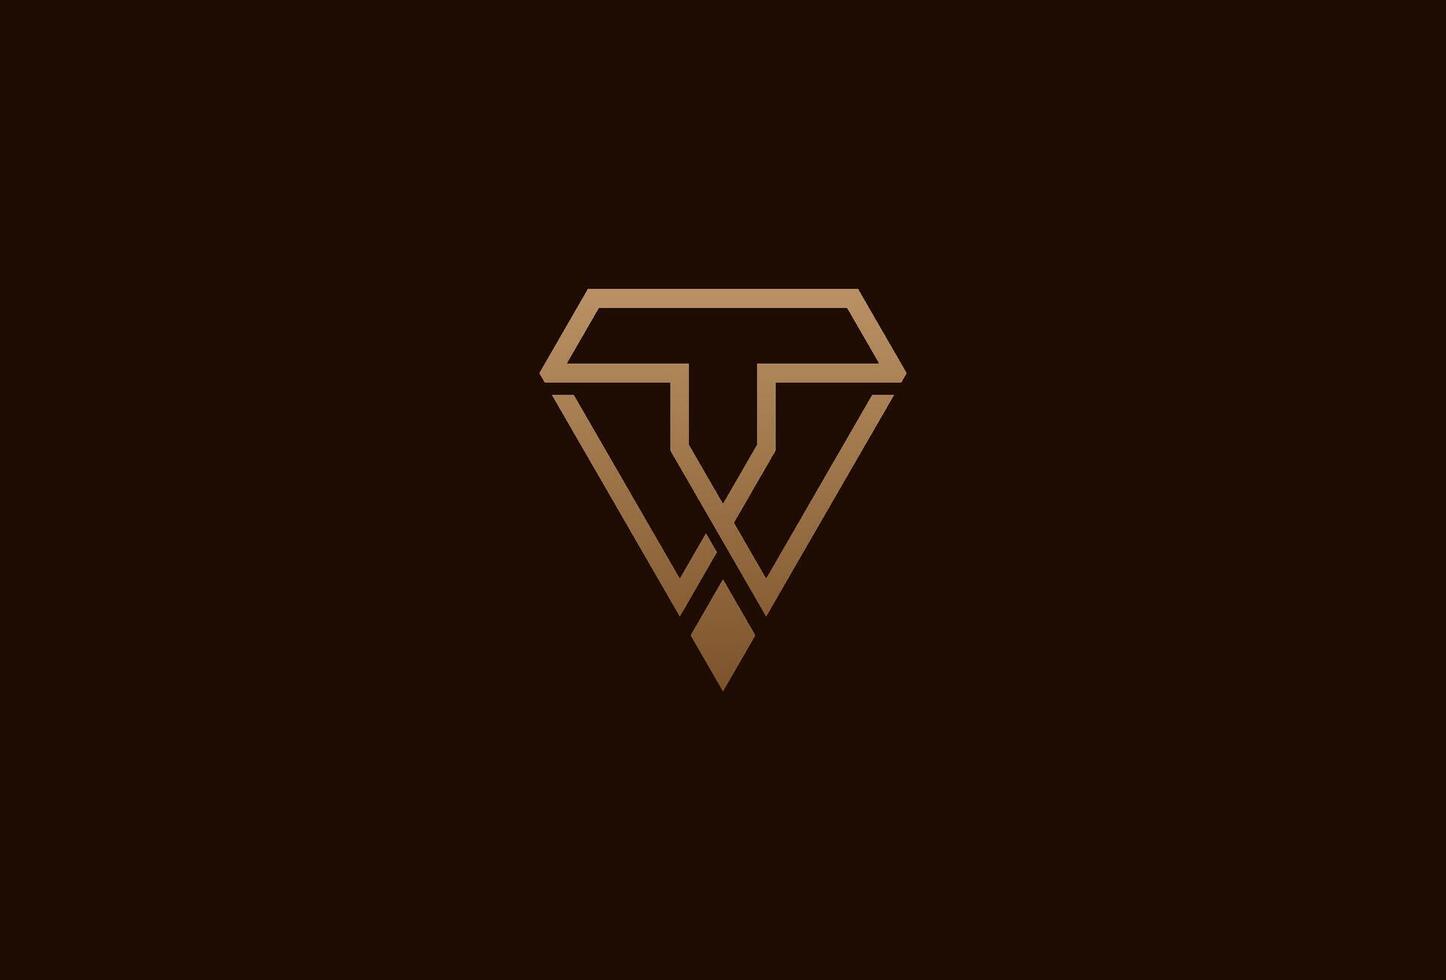 diamant logo, monogram brief t en w met diamant combinatie, bruikbaar voor merk en bedrijf logo's, vlak ontwerp logo sjabloon element, illustratie vector